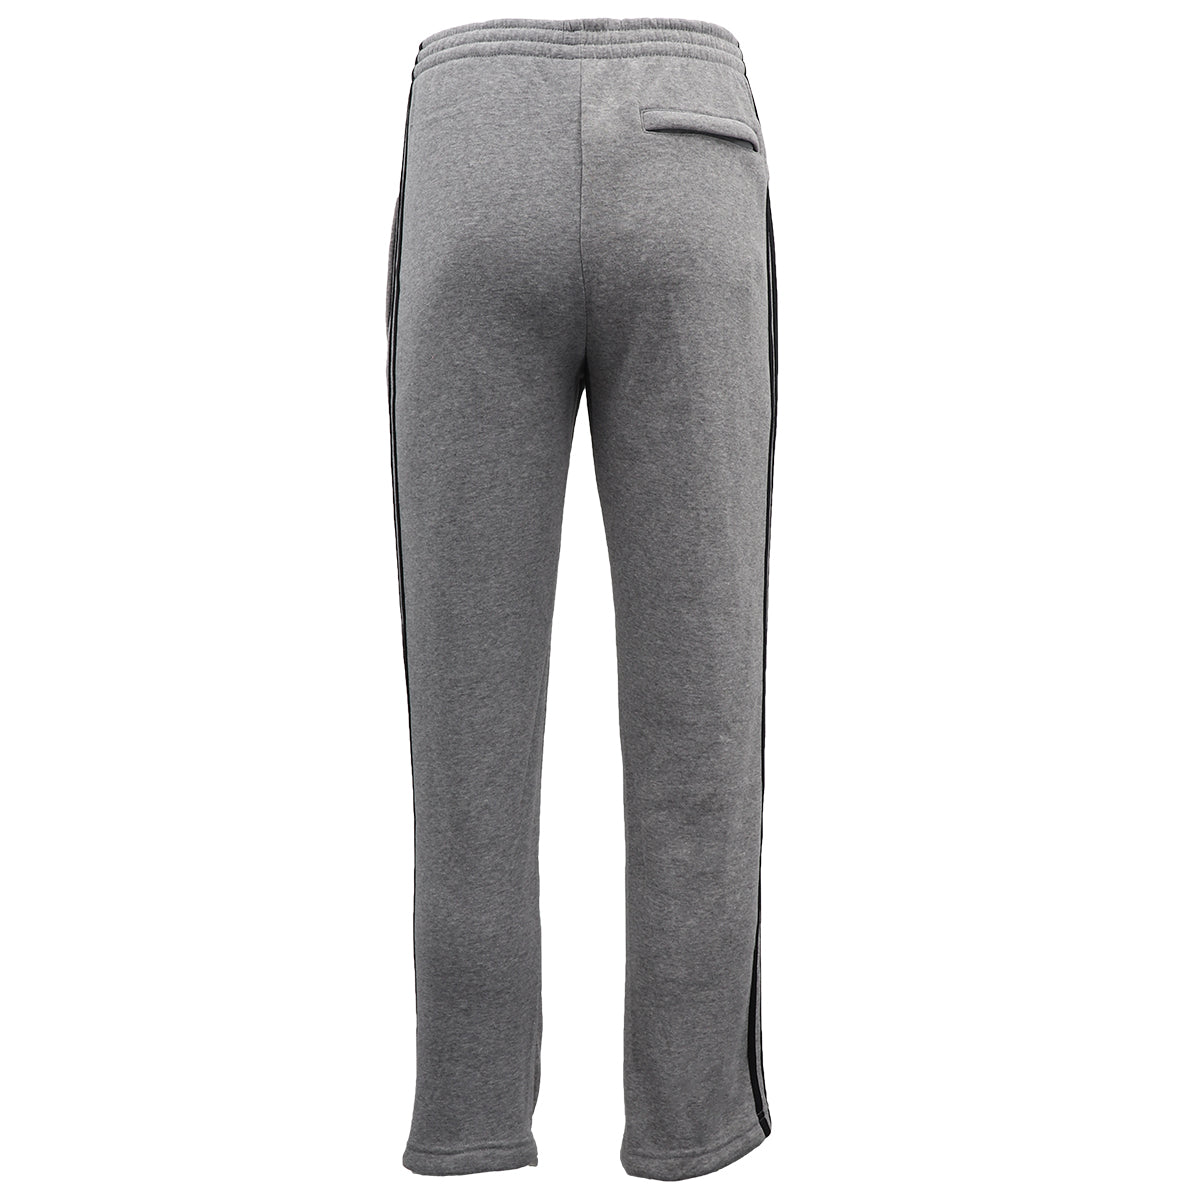 Men's Fleece Casual Sports Track Pants w Zip Pocket Striped Sweat Trousers S-6XL, Navy, 3XL